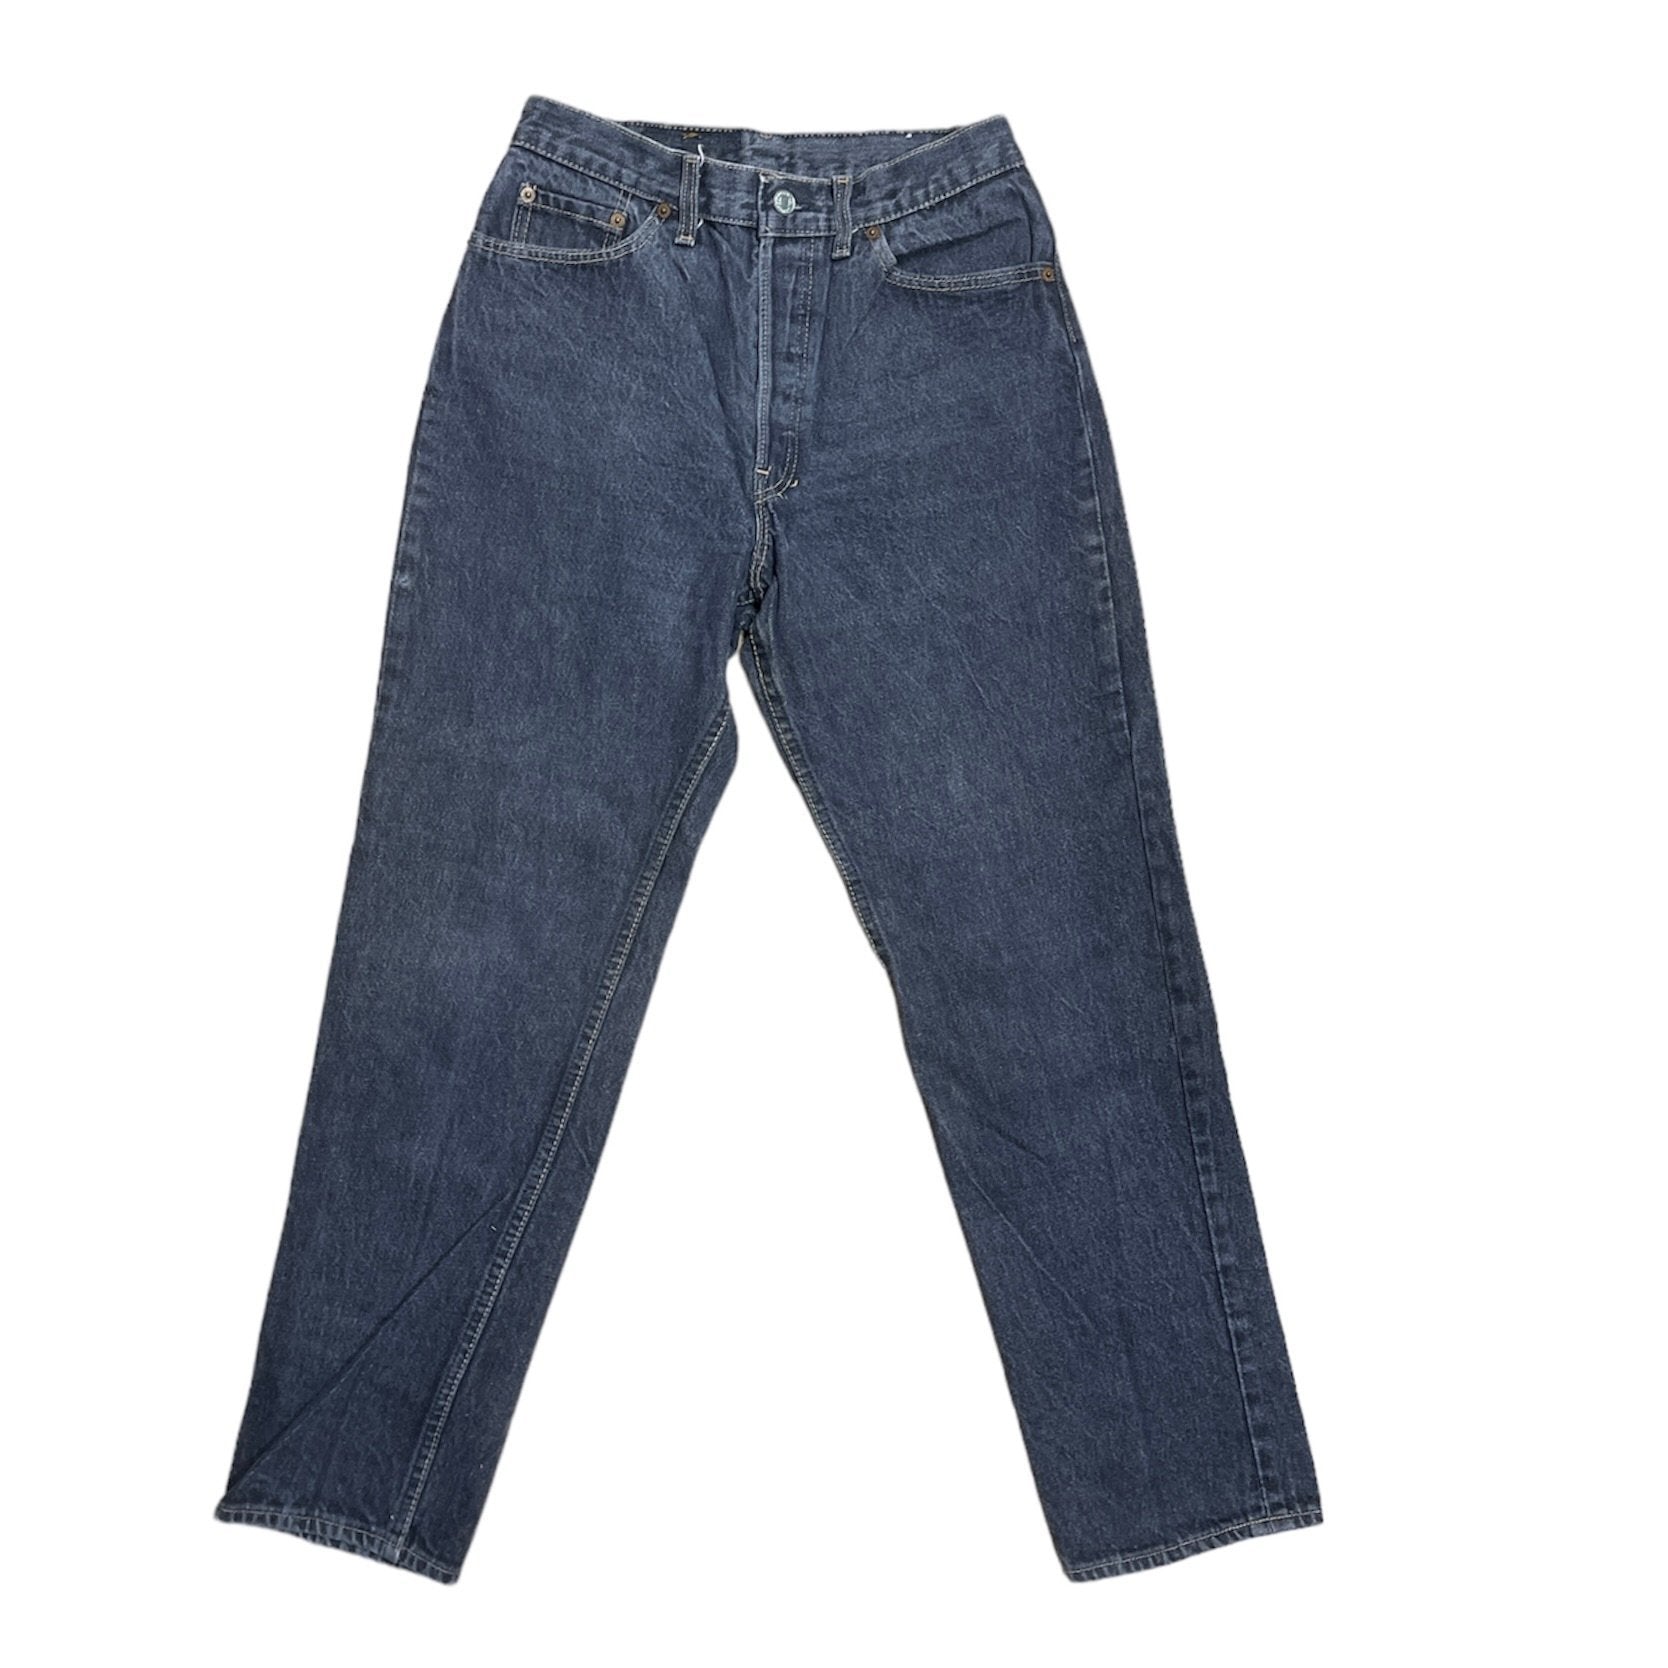 Vintage Levis 512 Grey/Black Jeans (W30/L30)